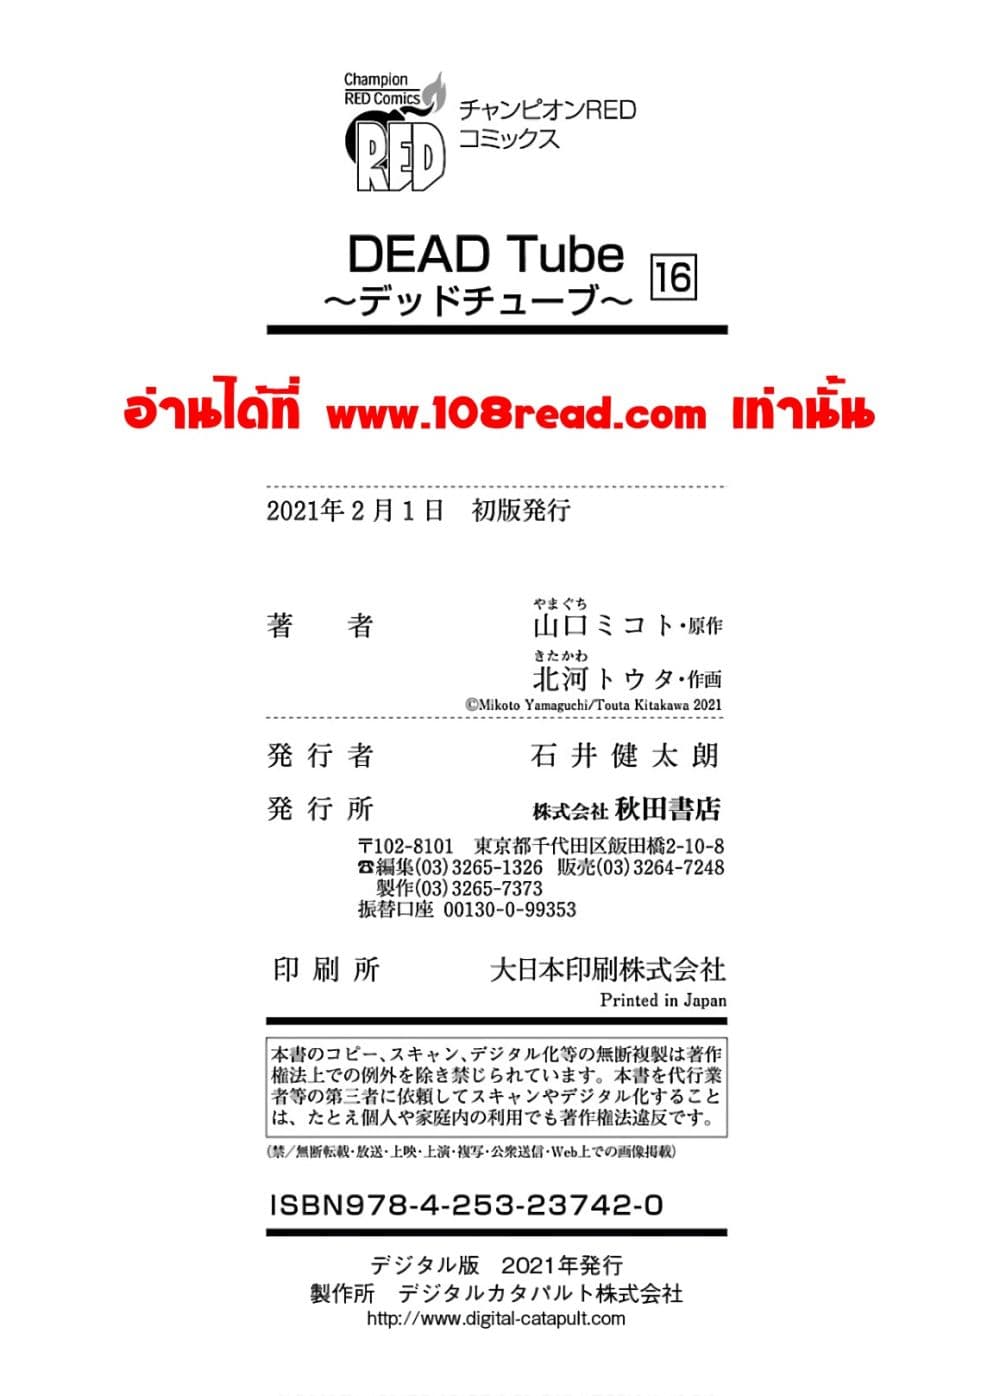 DEAD Tube 66.2 20